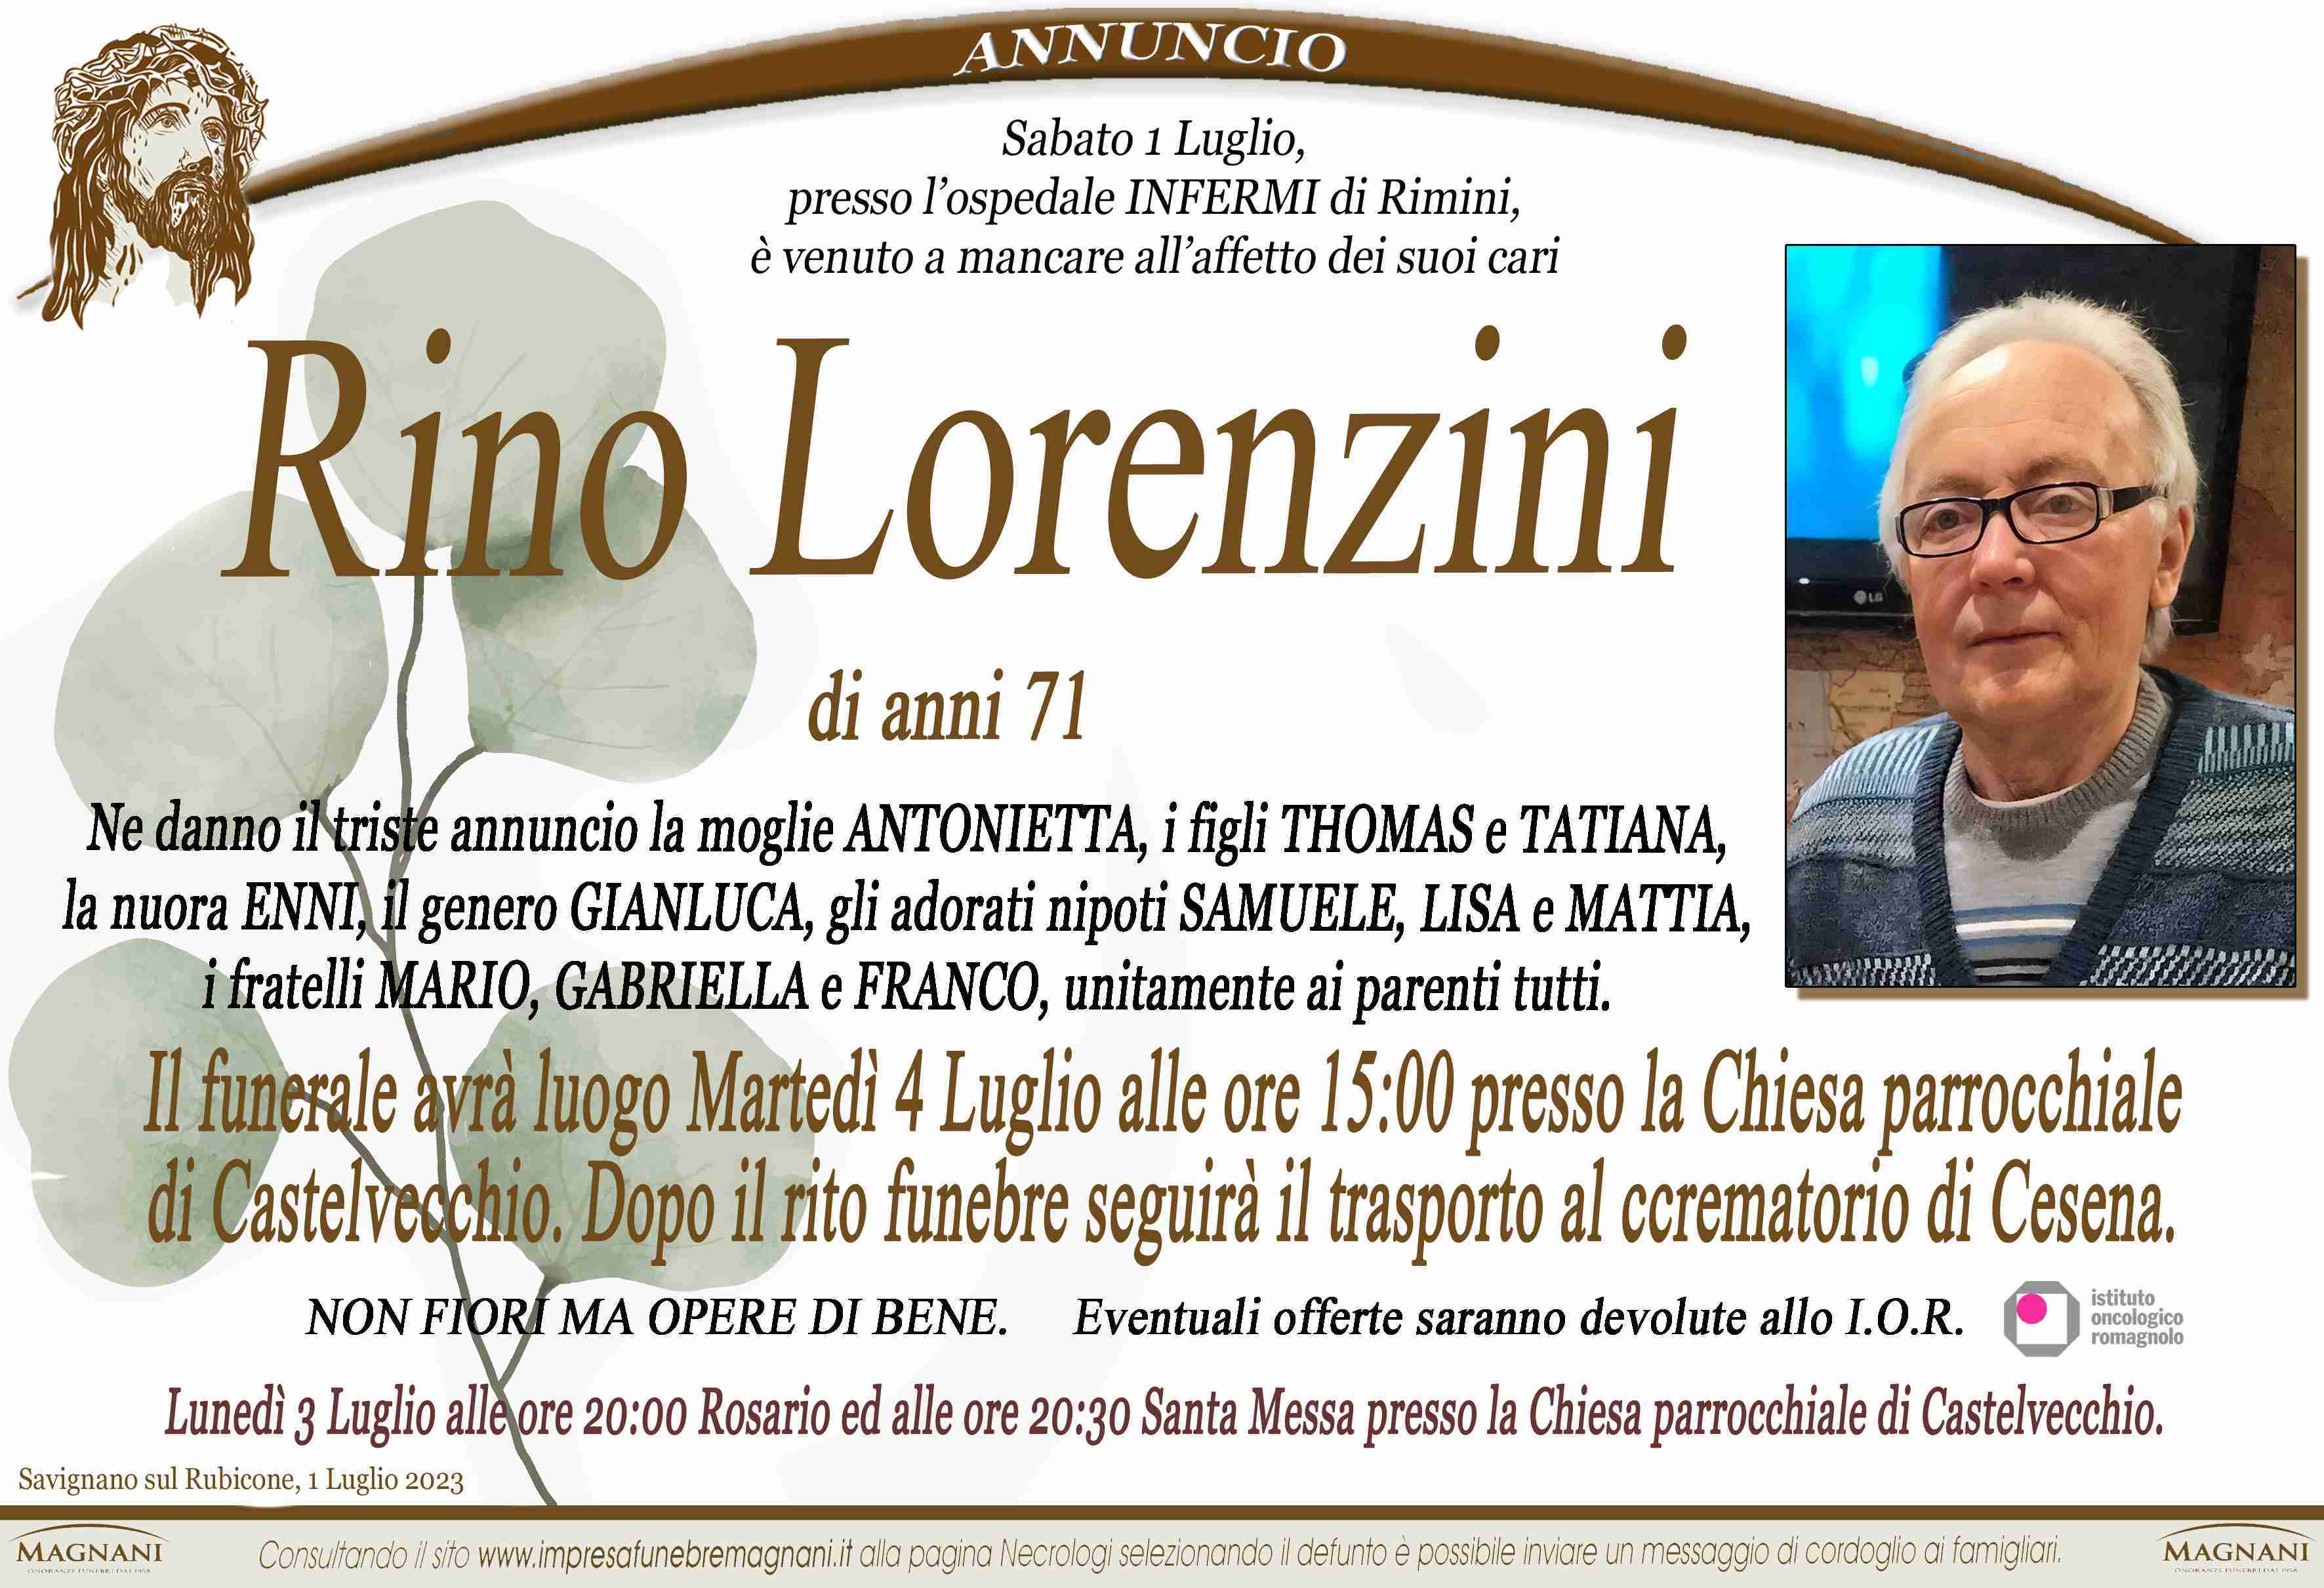 Rino Lorenzini